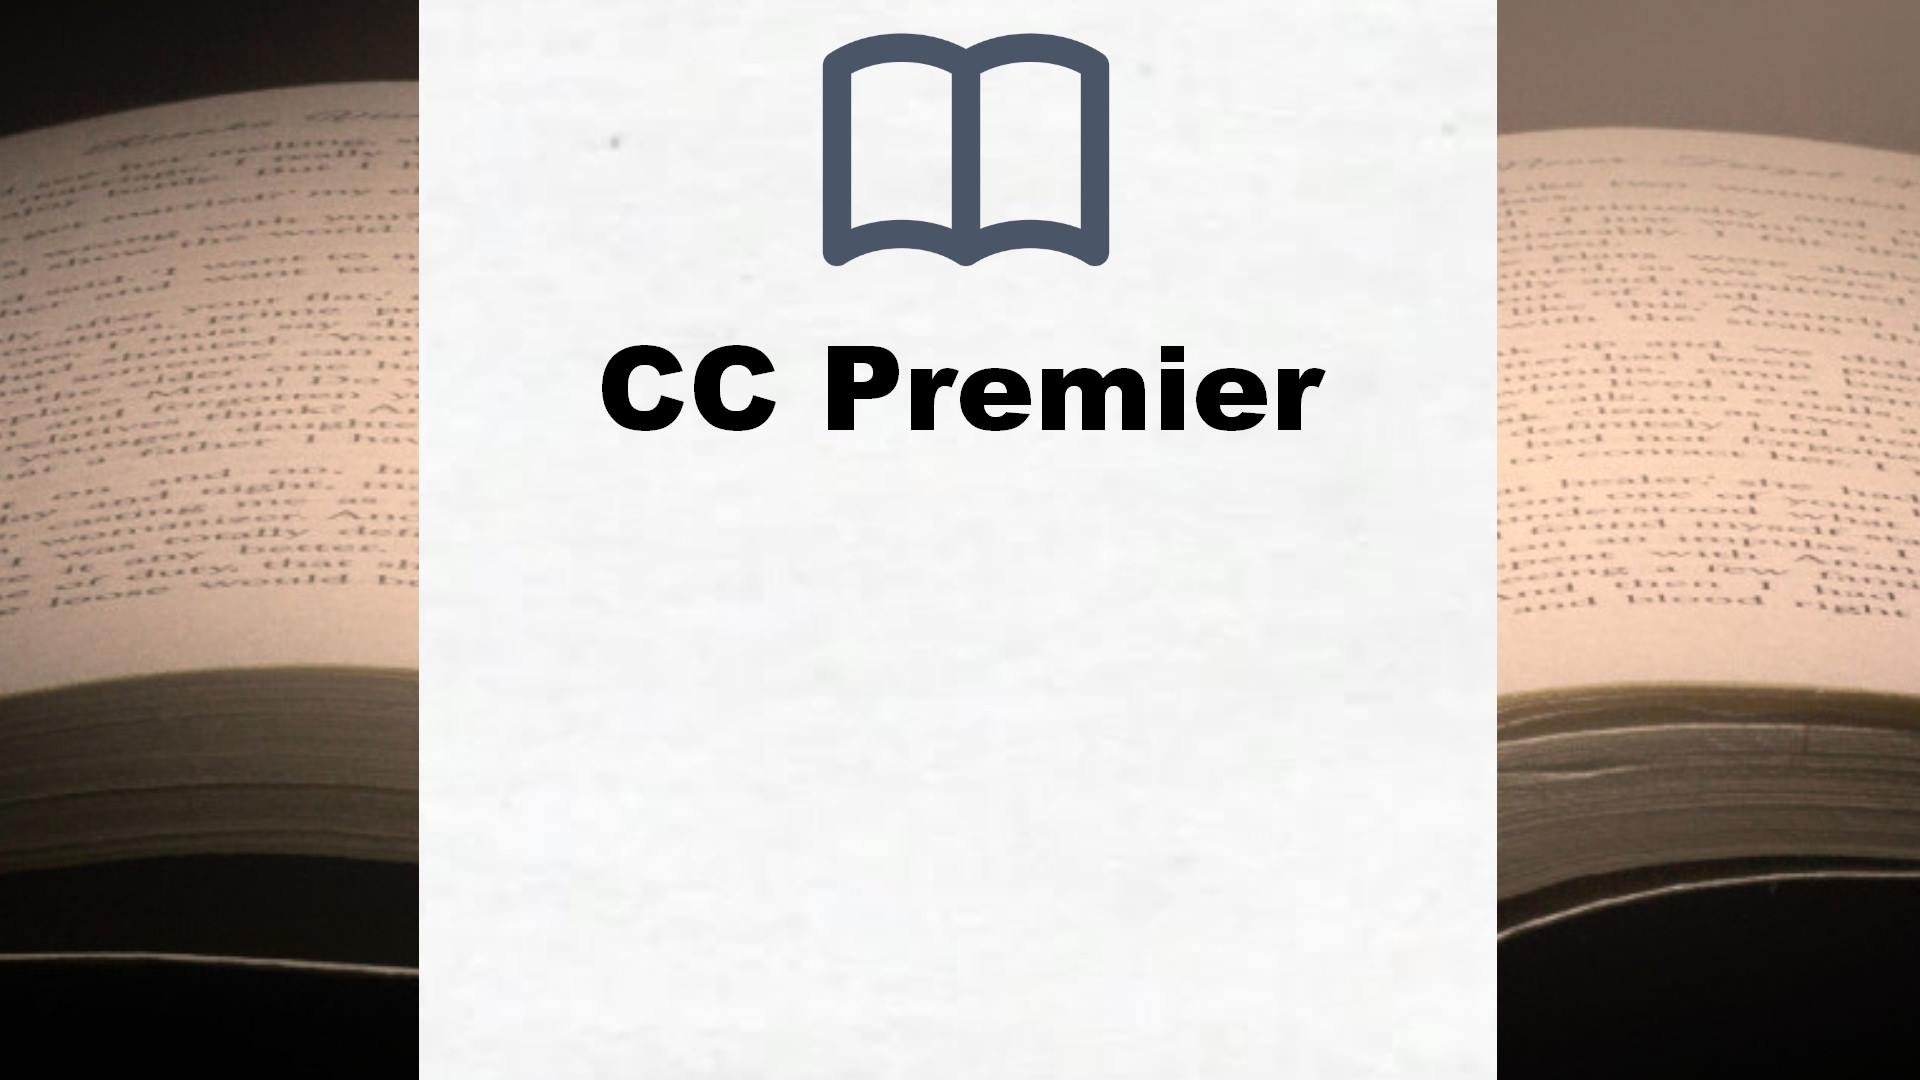 Bücher über CC Premier